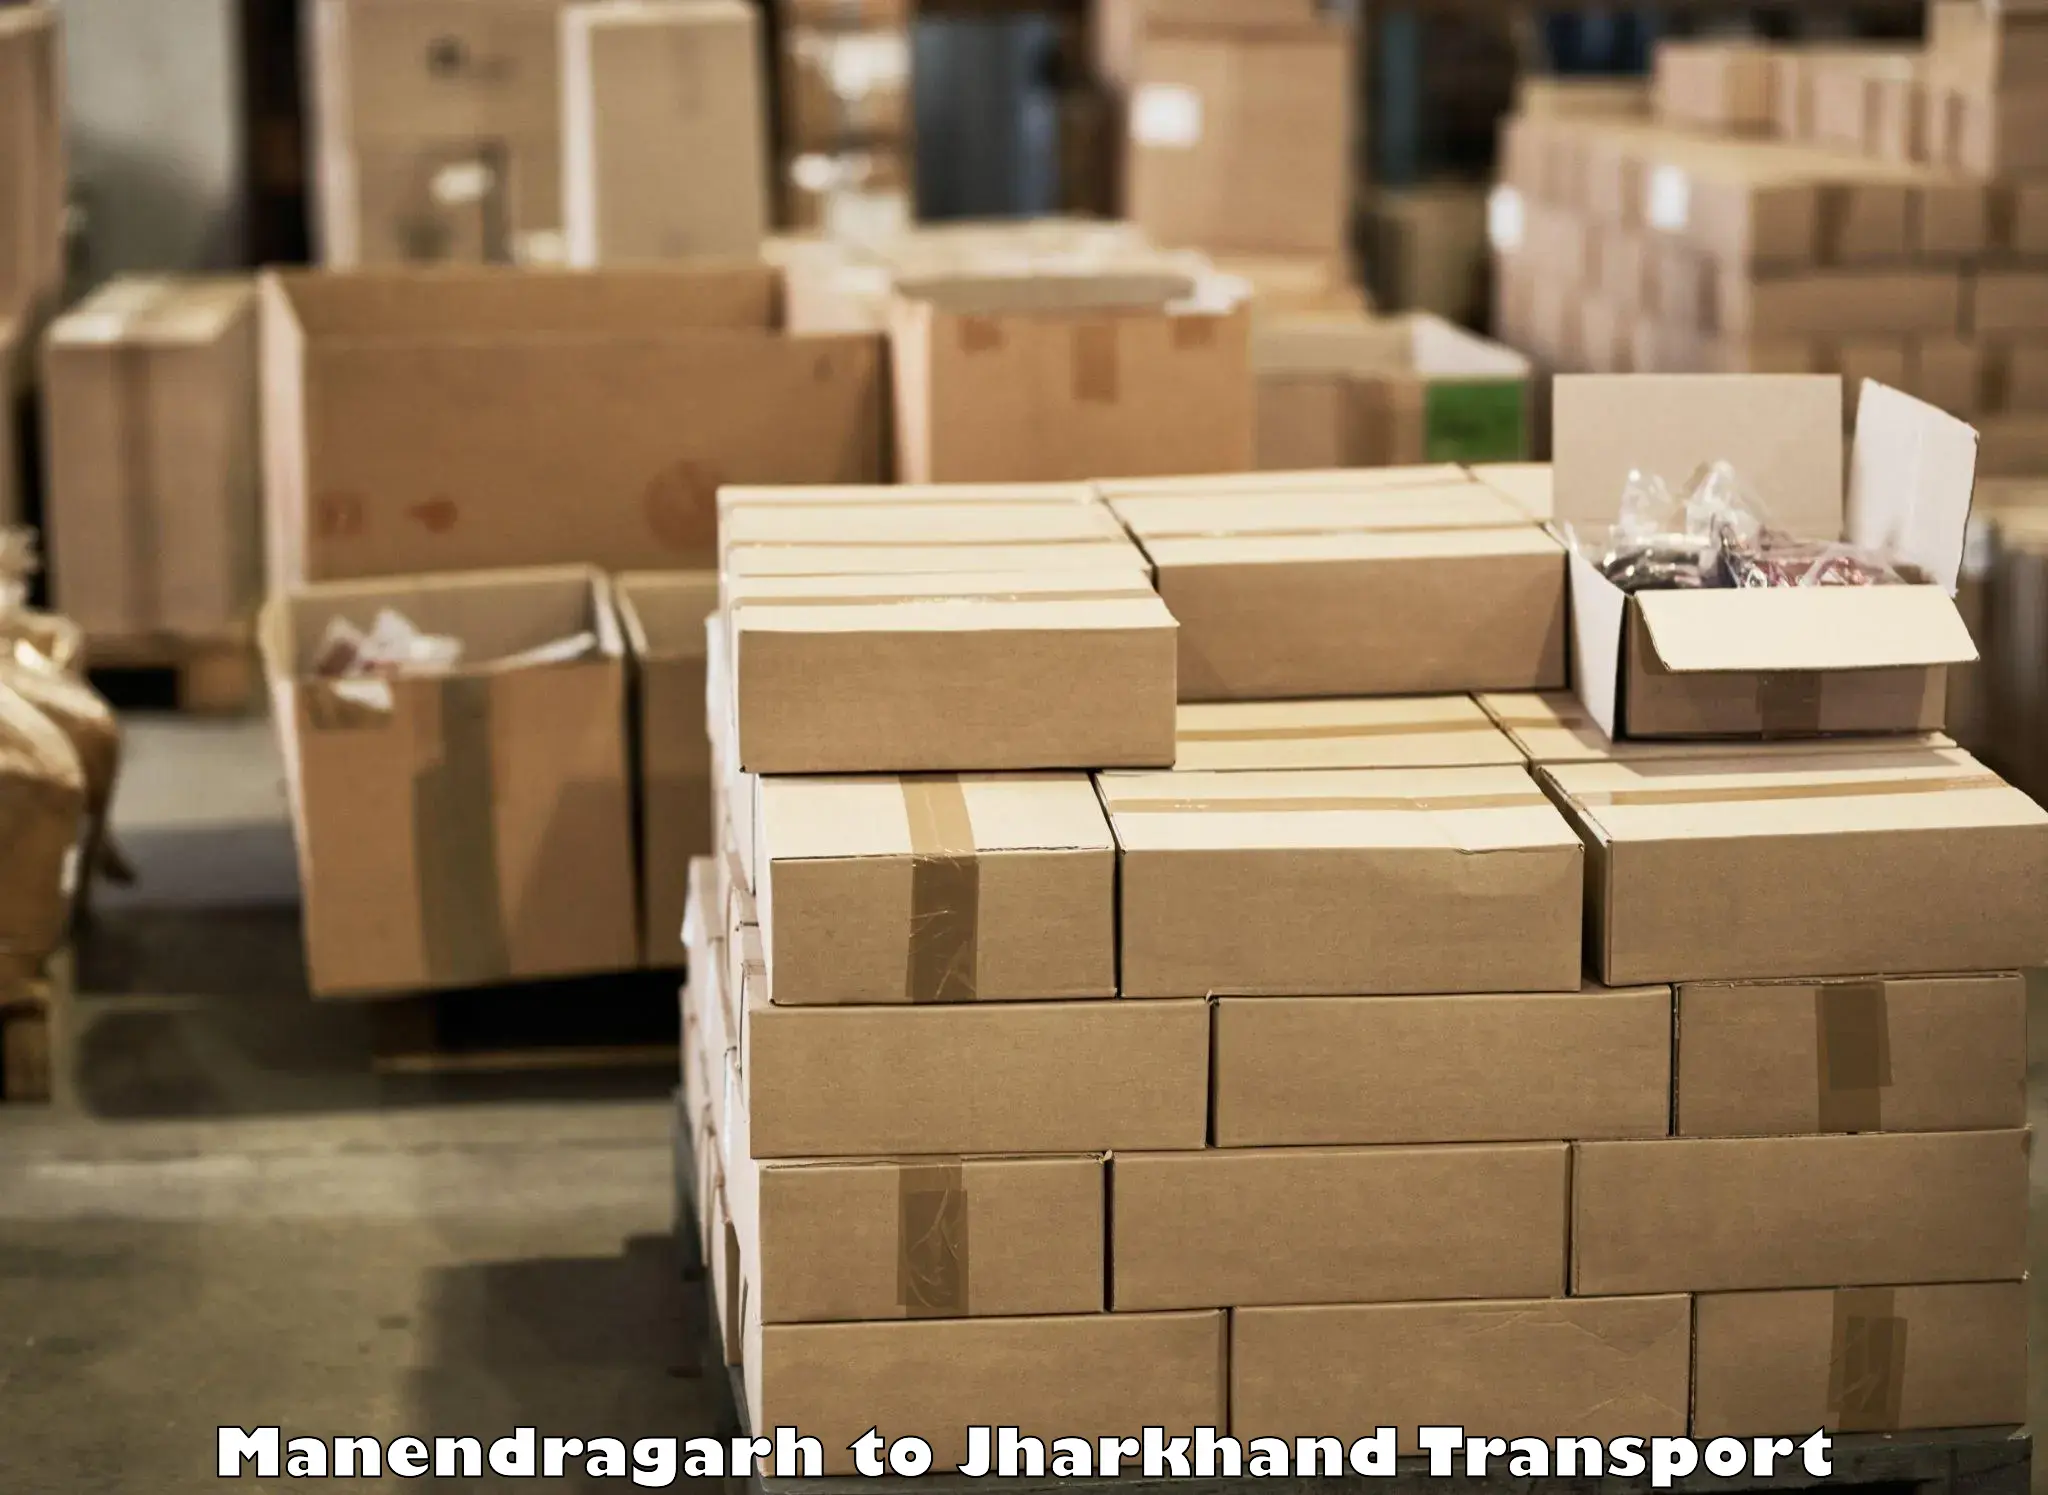 Part load transport service in India Manendragarh to Medininagar